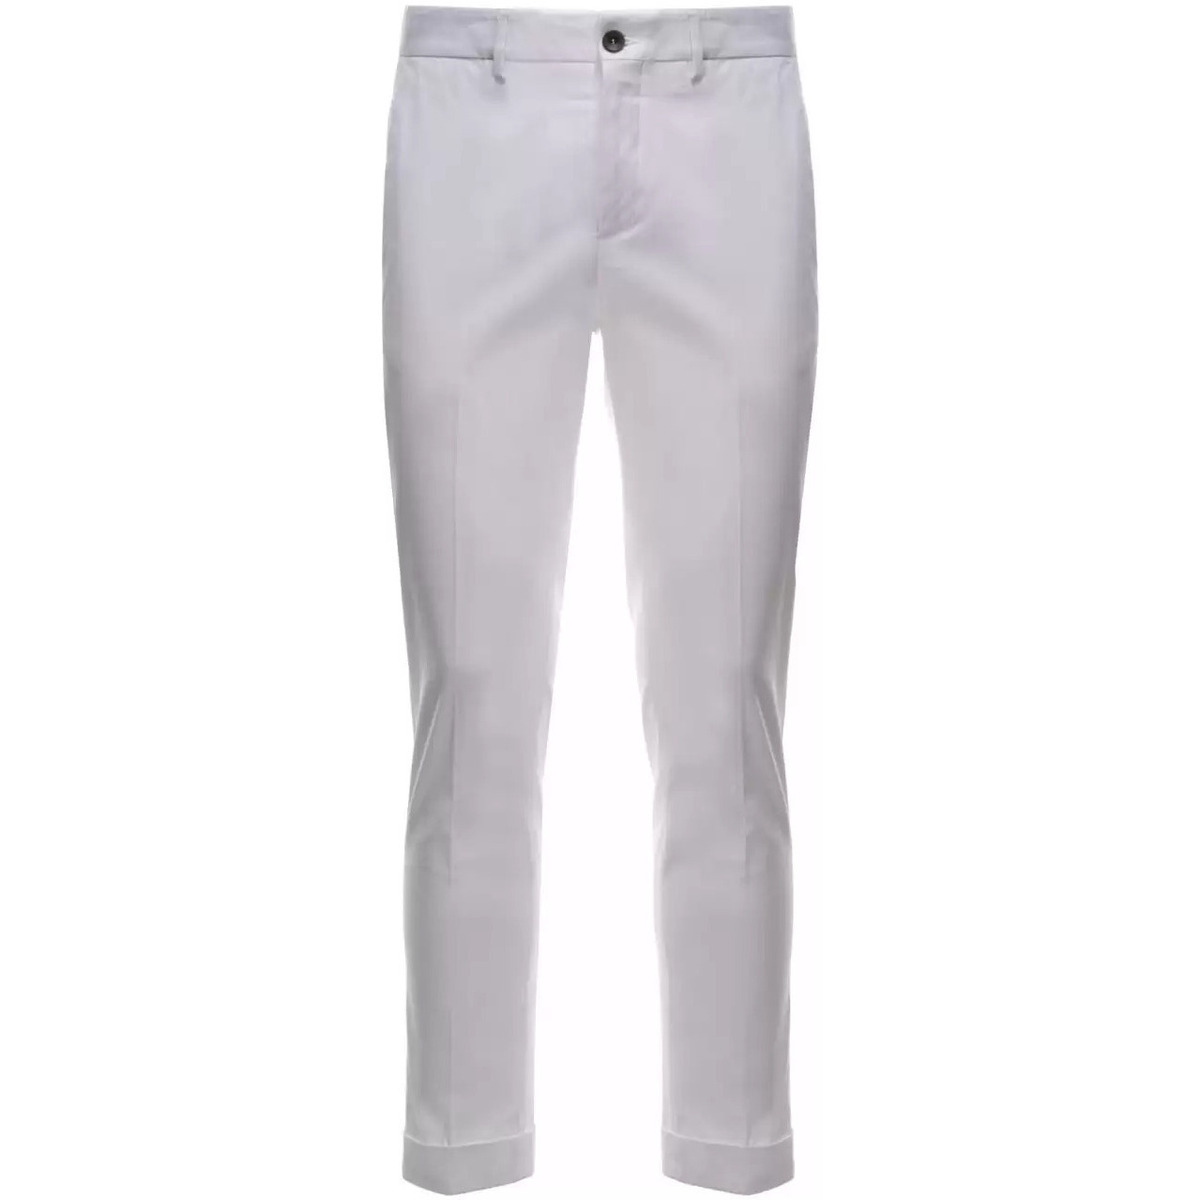 Abbigliamento Uomo Pantaloni Outfit pantaloni bianchi Bianco